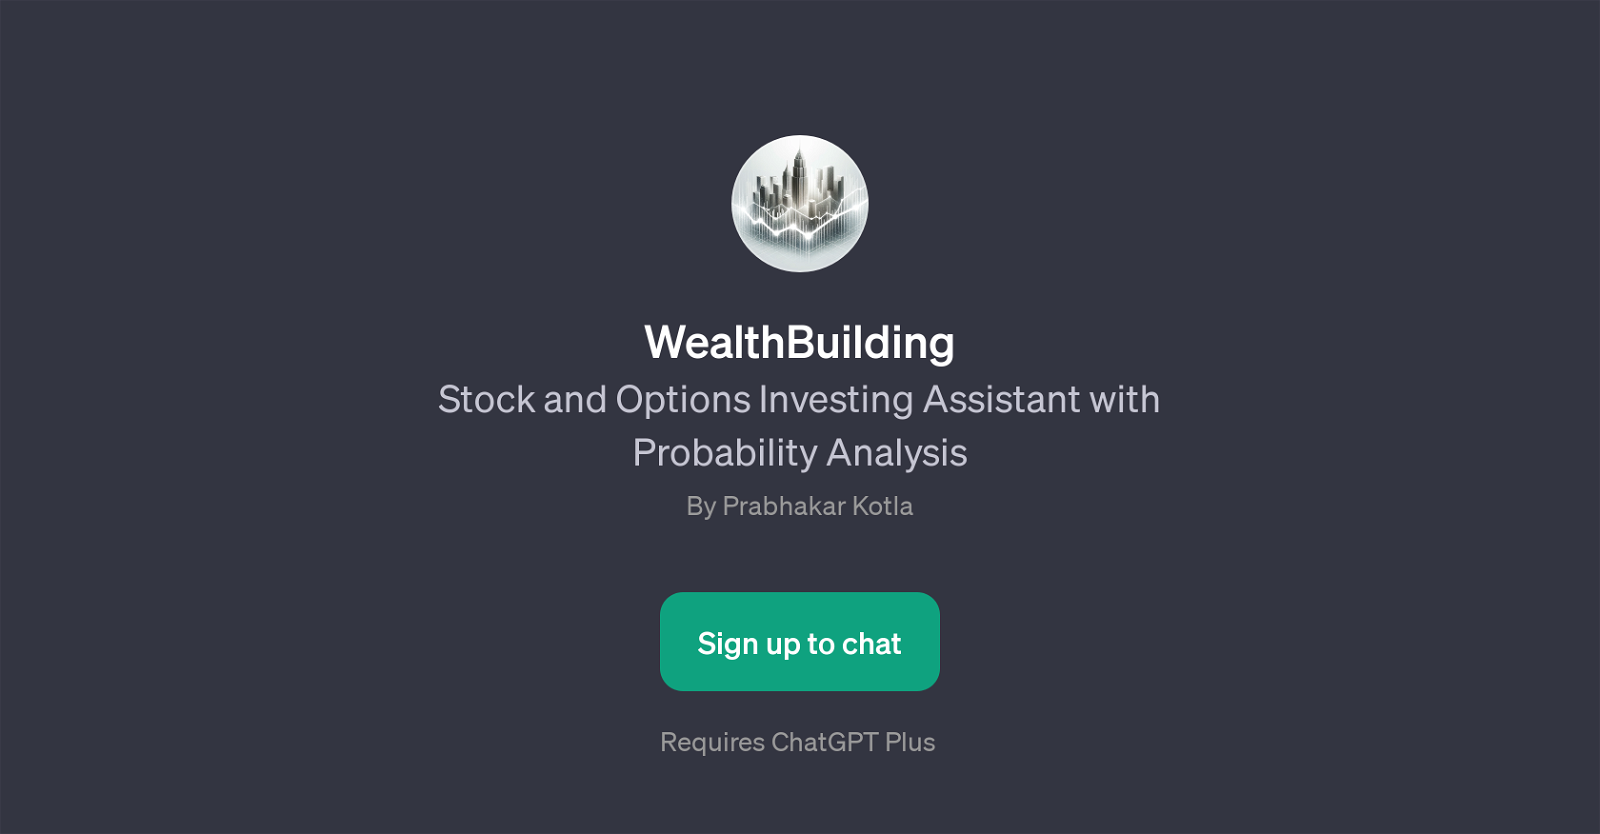 WealthBuilding website